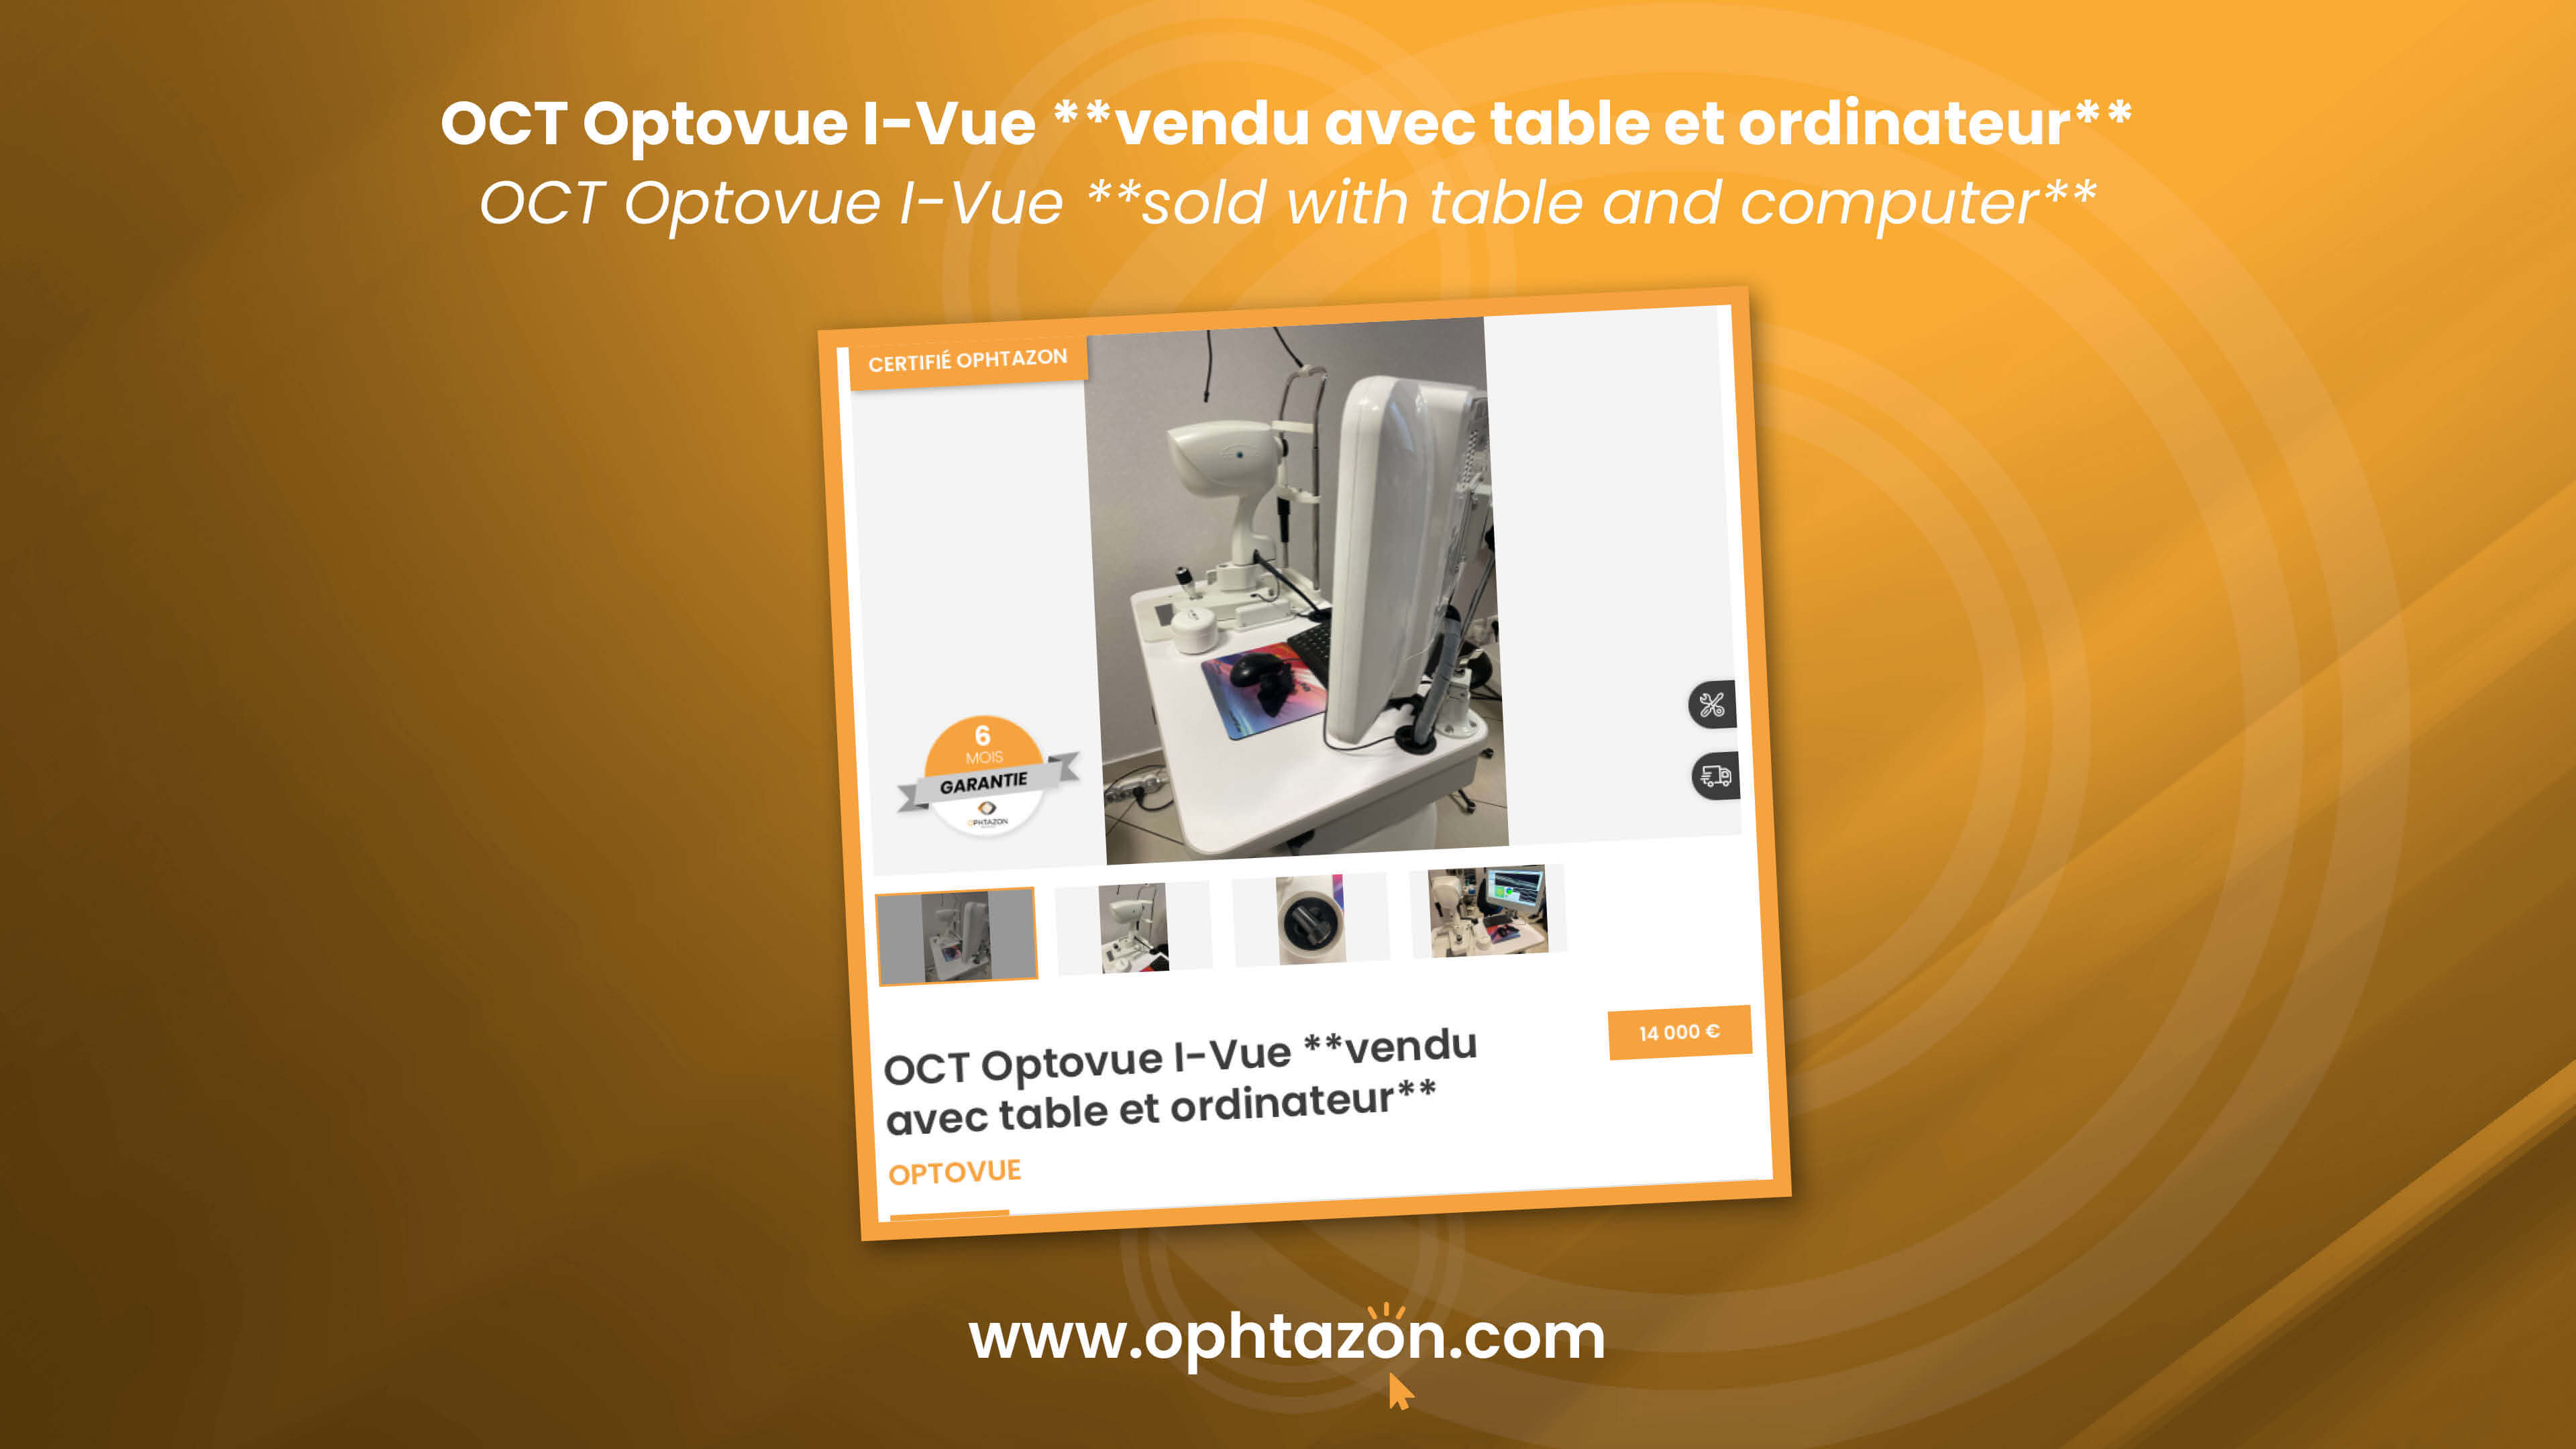 Le OCT Optovue I-Vue **vendu avec table et ordinateur** est disponible !